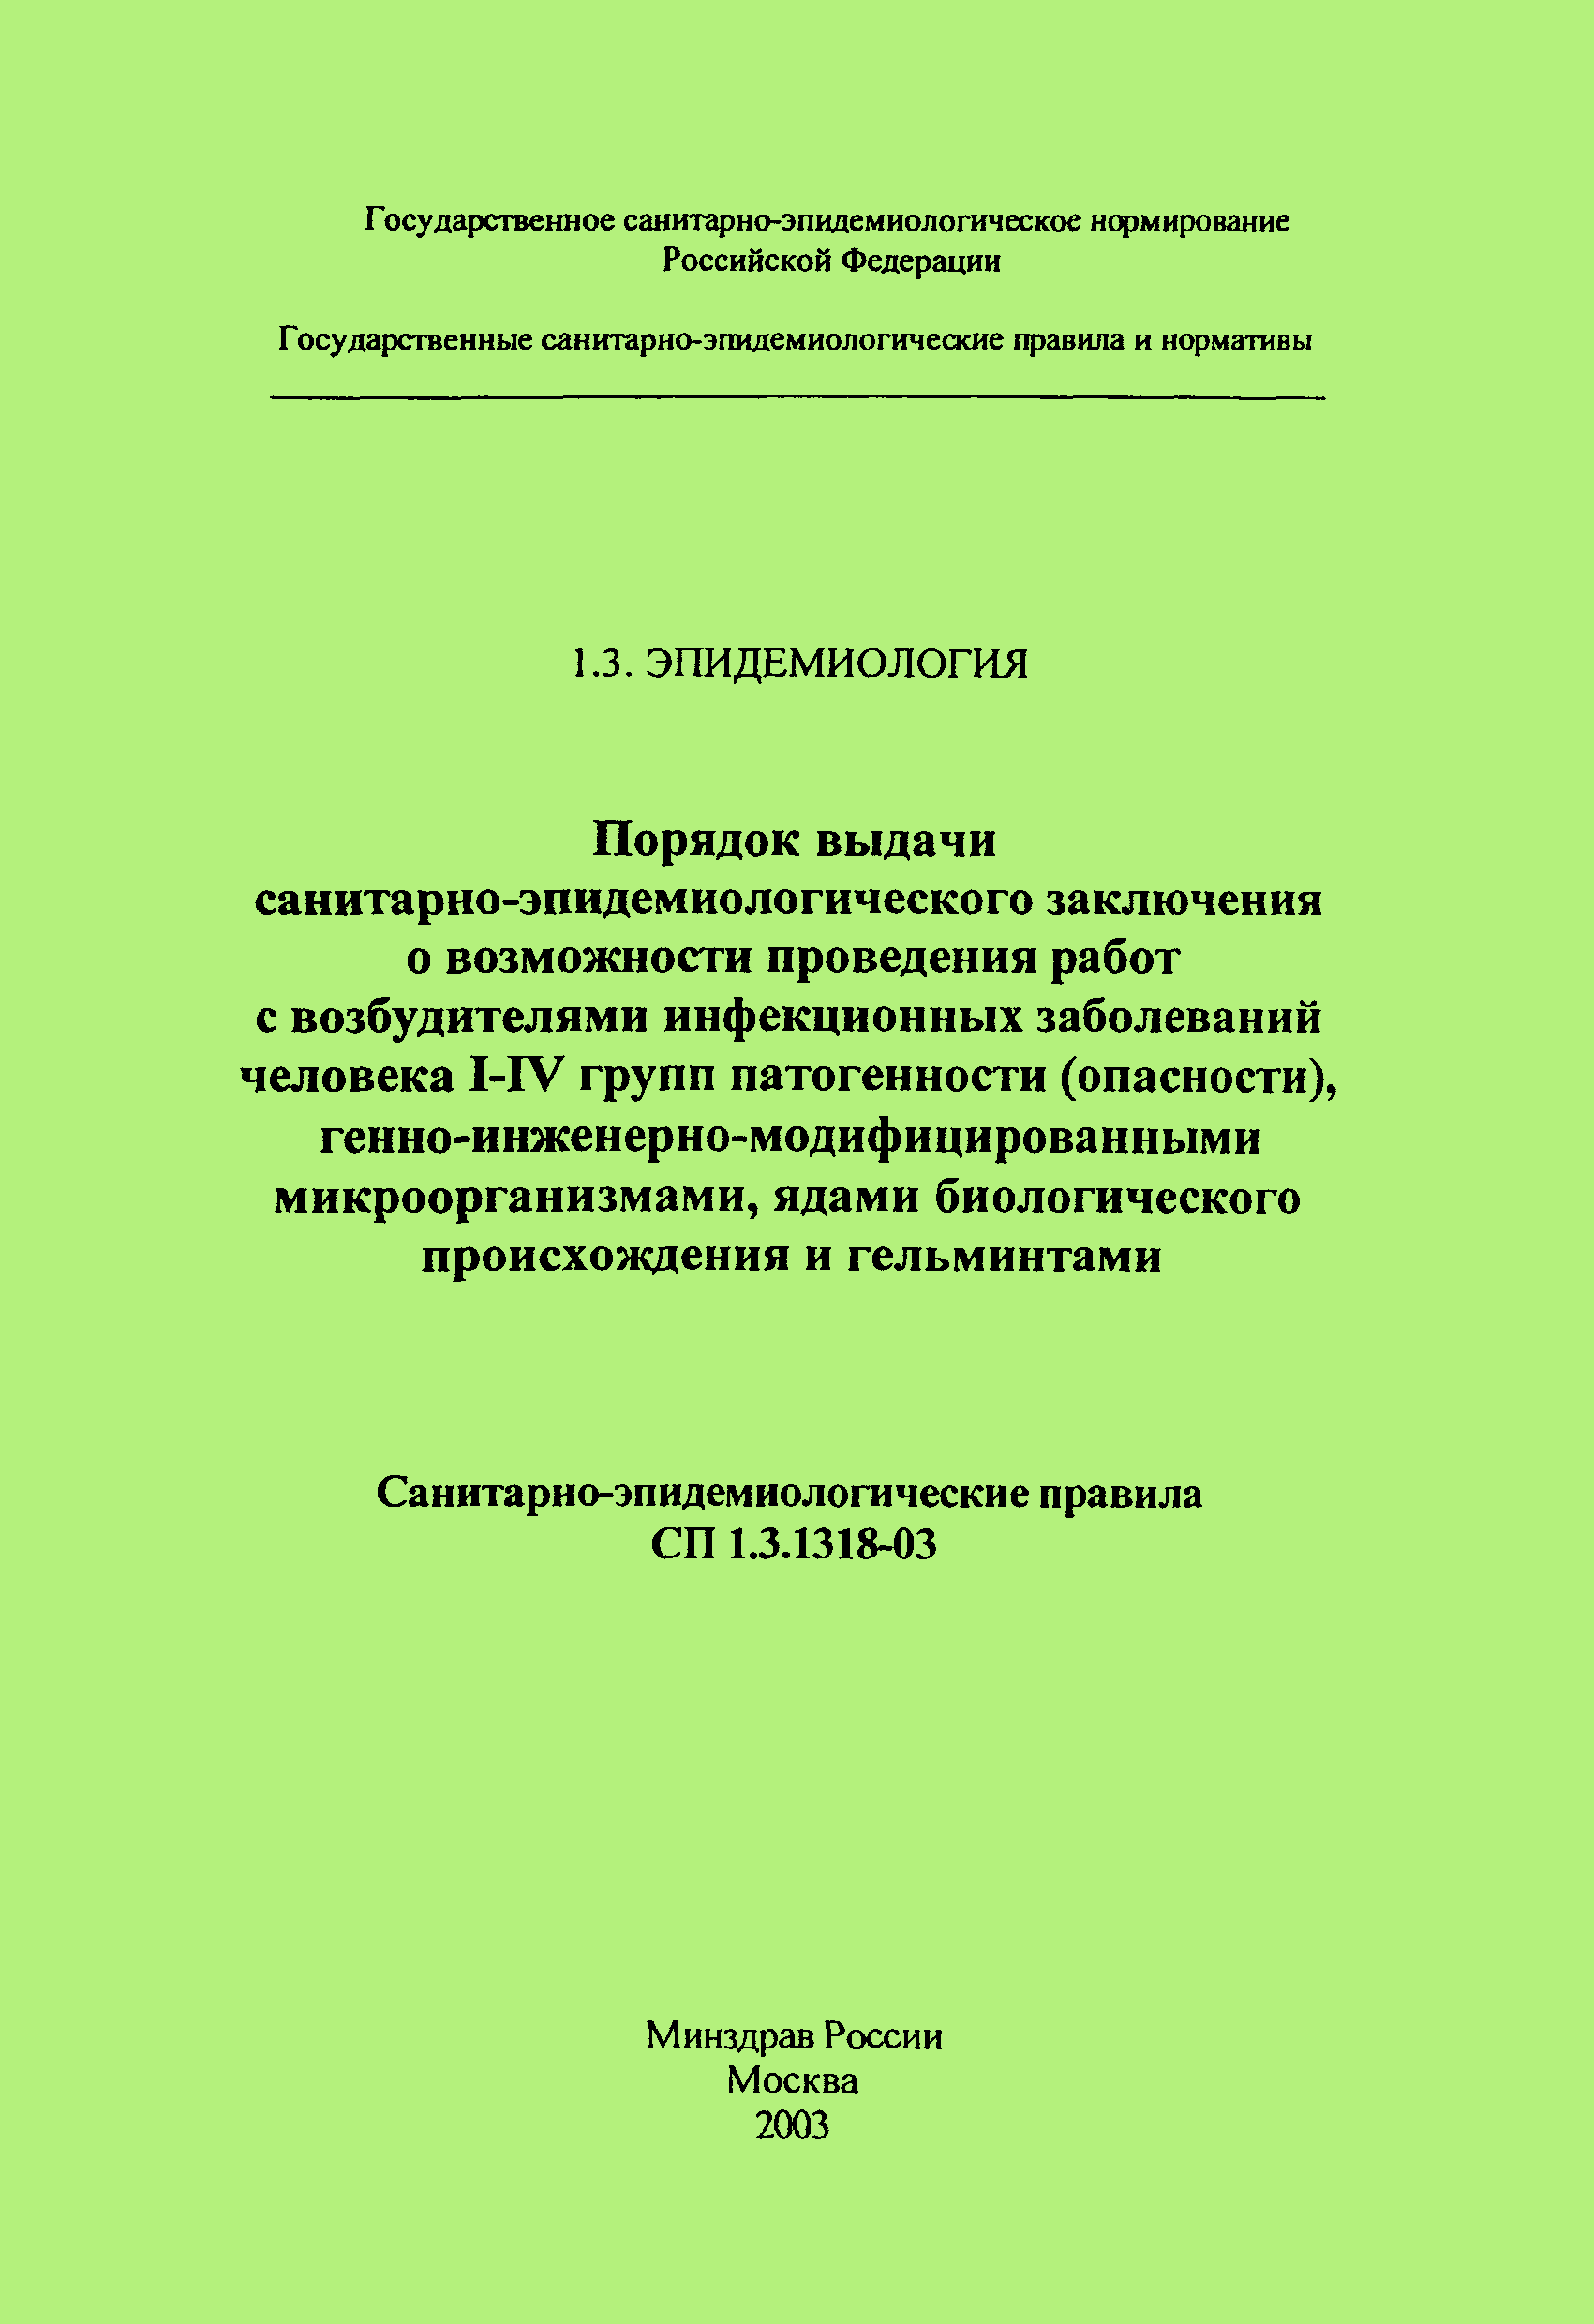 СП 1.3.1318-03